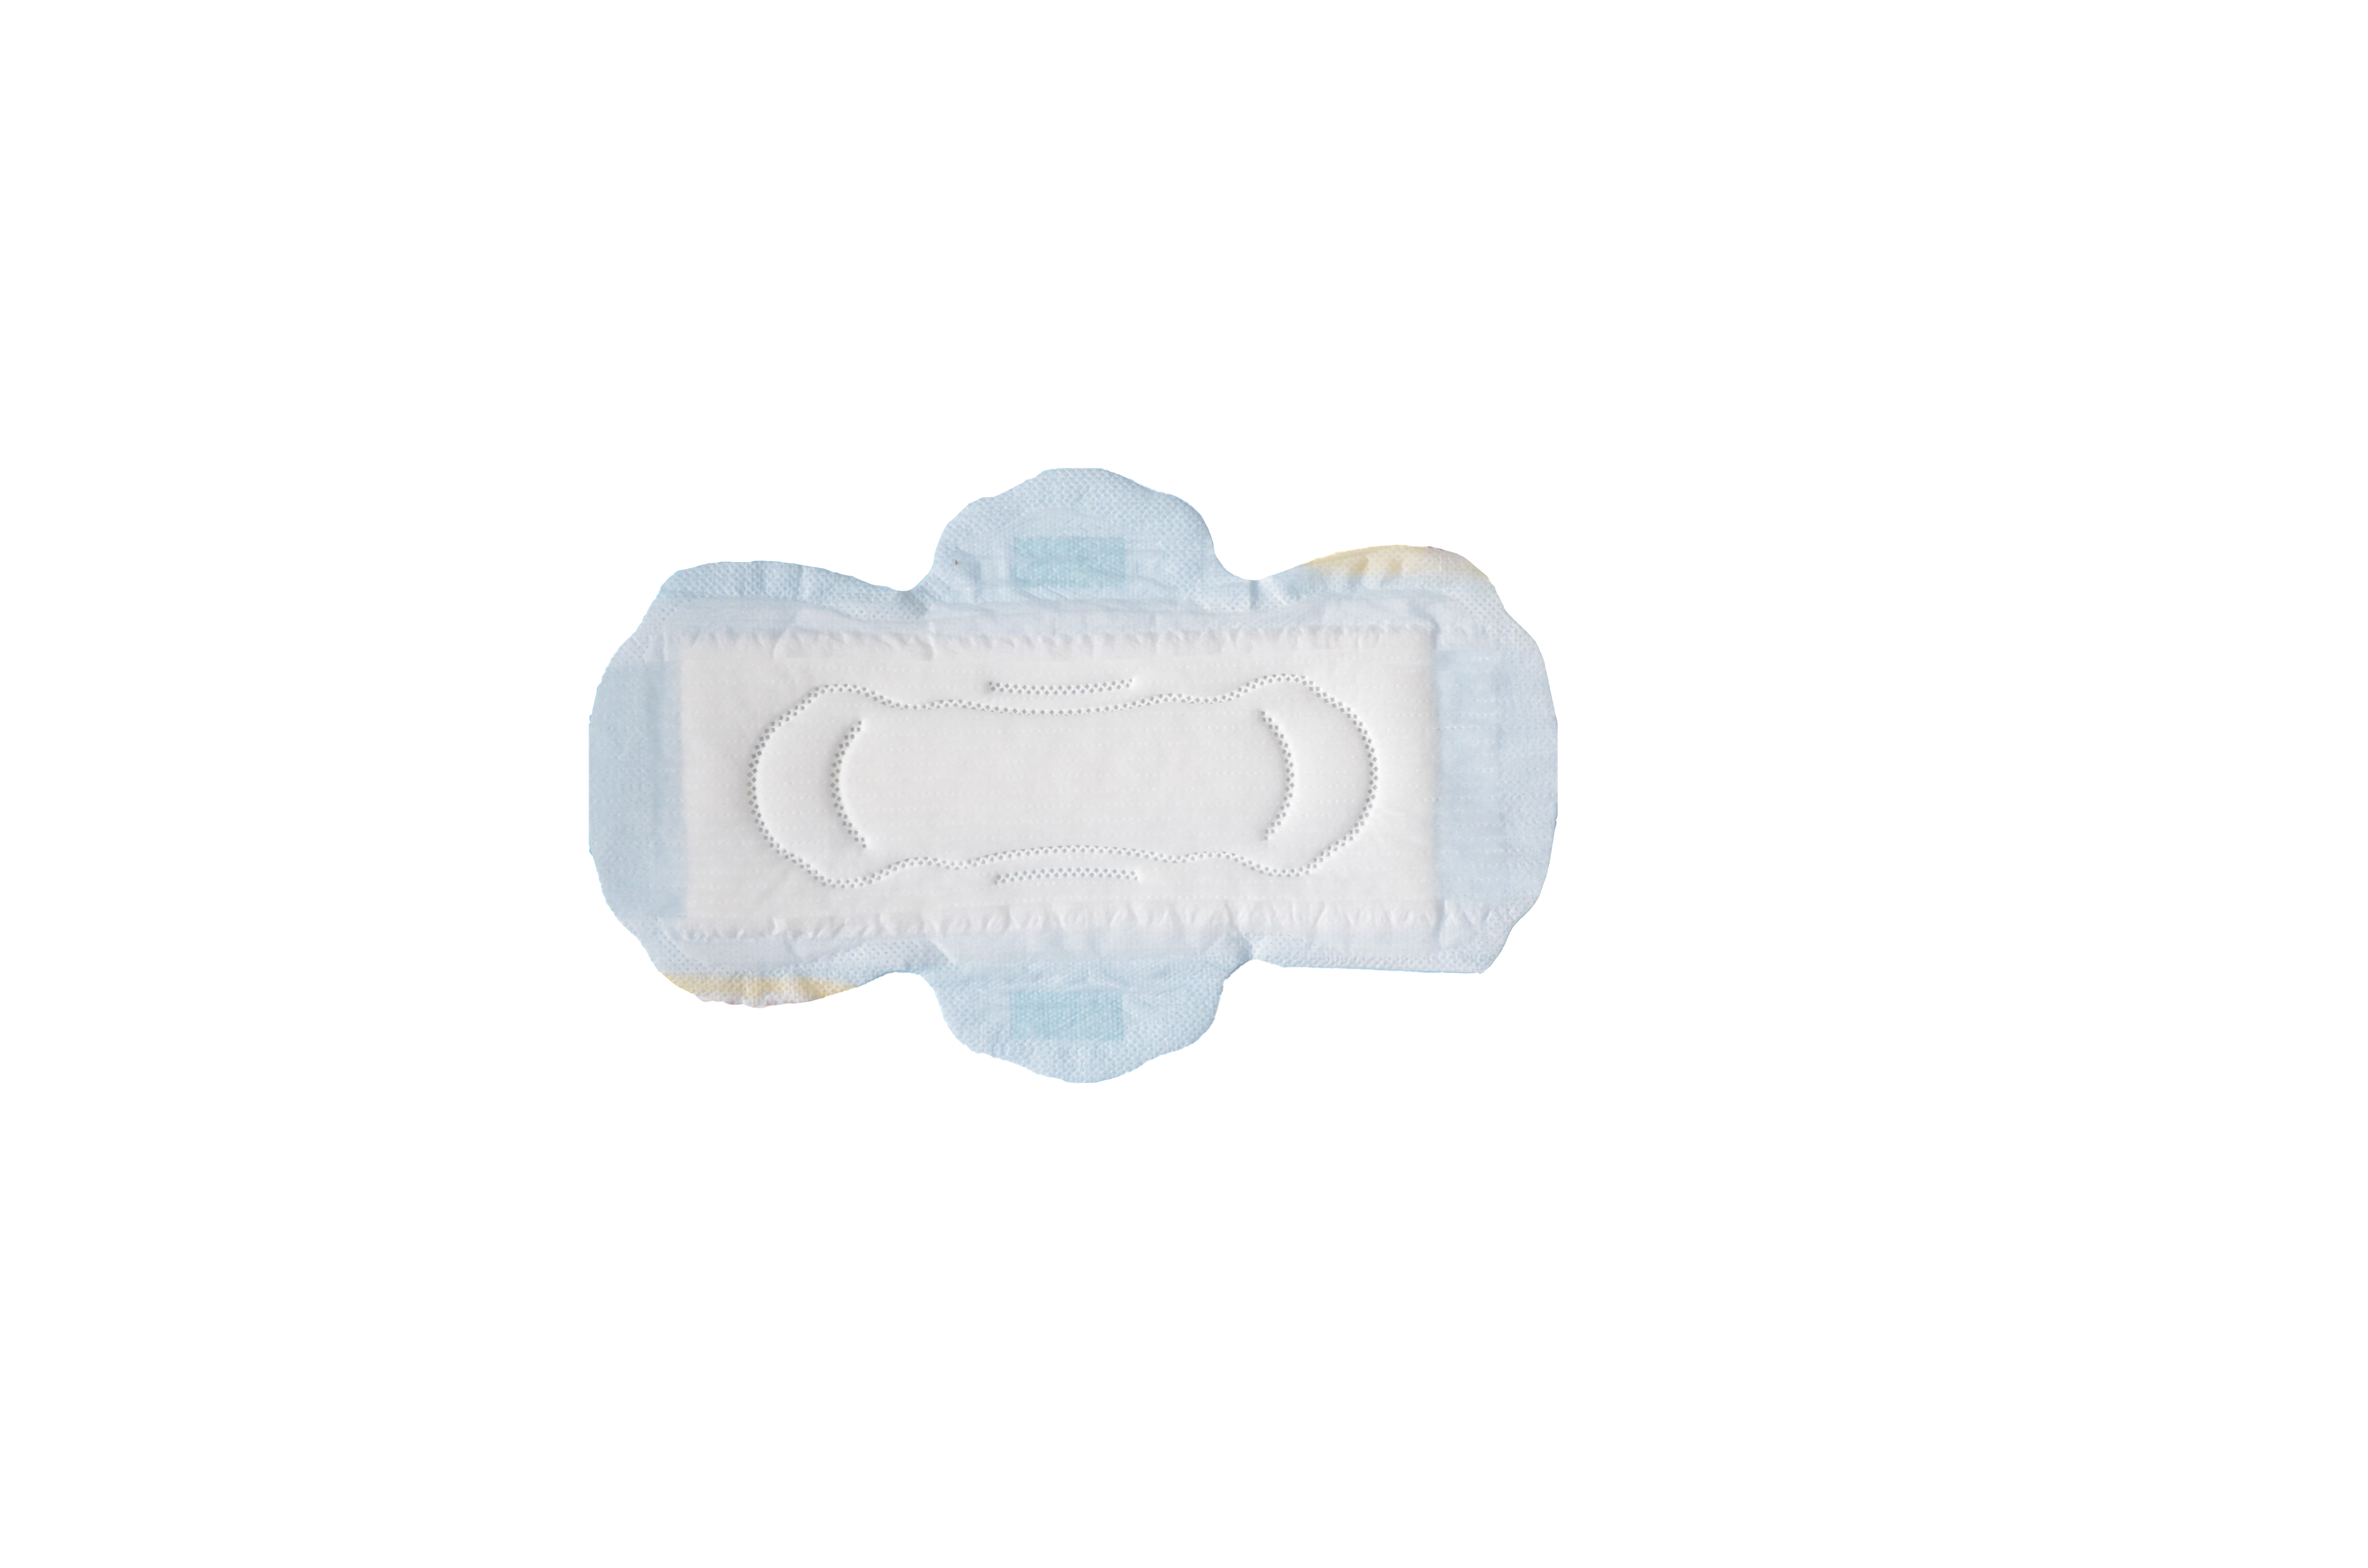 Cena fabryczna Niska cena Bezpłatna próbka miękkiej bawełnianej podpaski higienicznej dla kobiet marki własnej